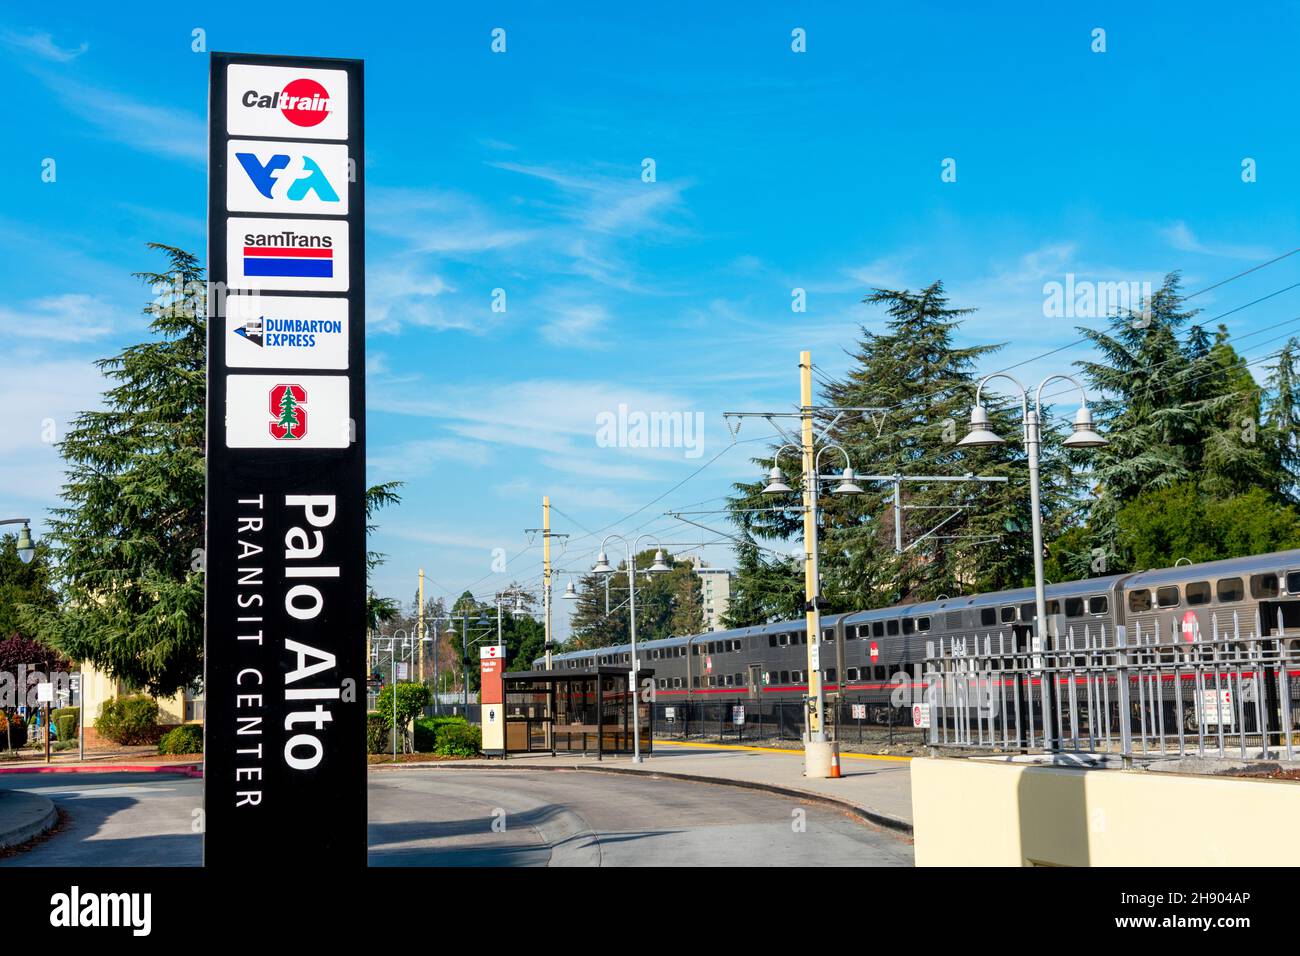 Außenansicht des Palo Alto Transit Center. Wegweiser mit Namen der öffentlichen Verkehrsmittel - SamTrans, Caltrain, VTA, Dumbarton Express Stockfoto